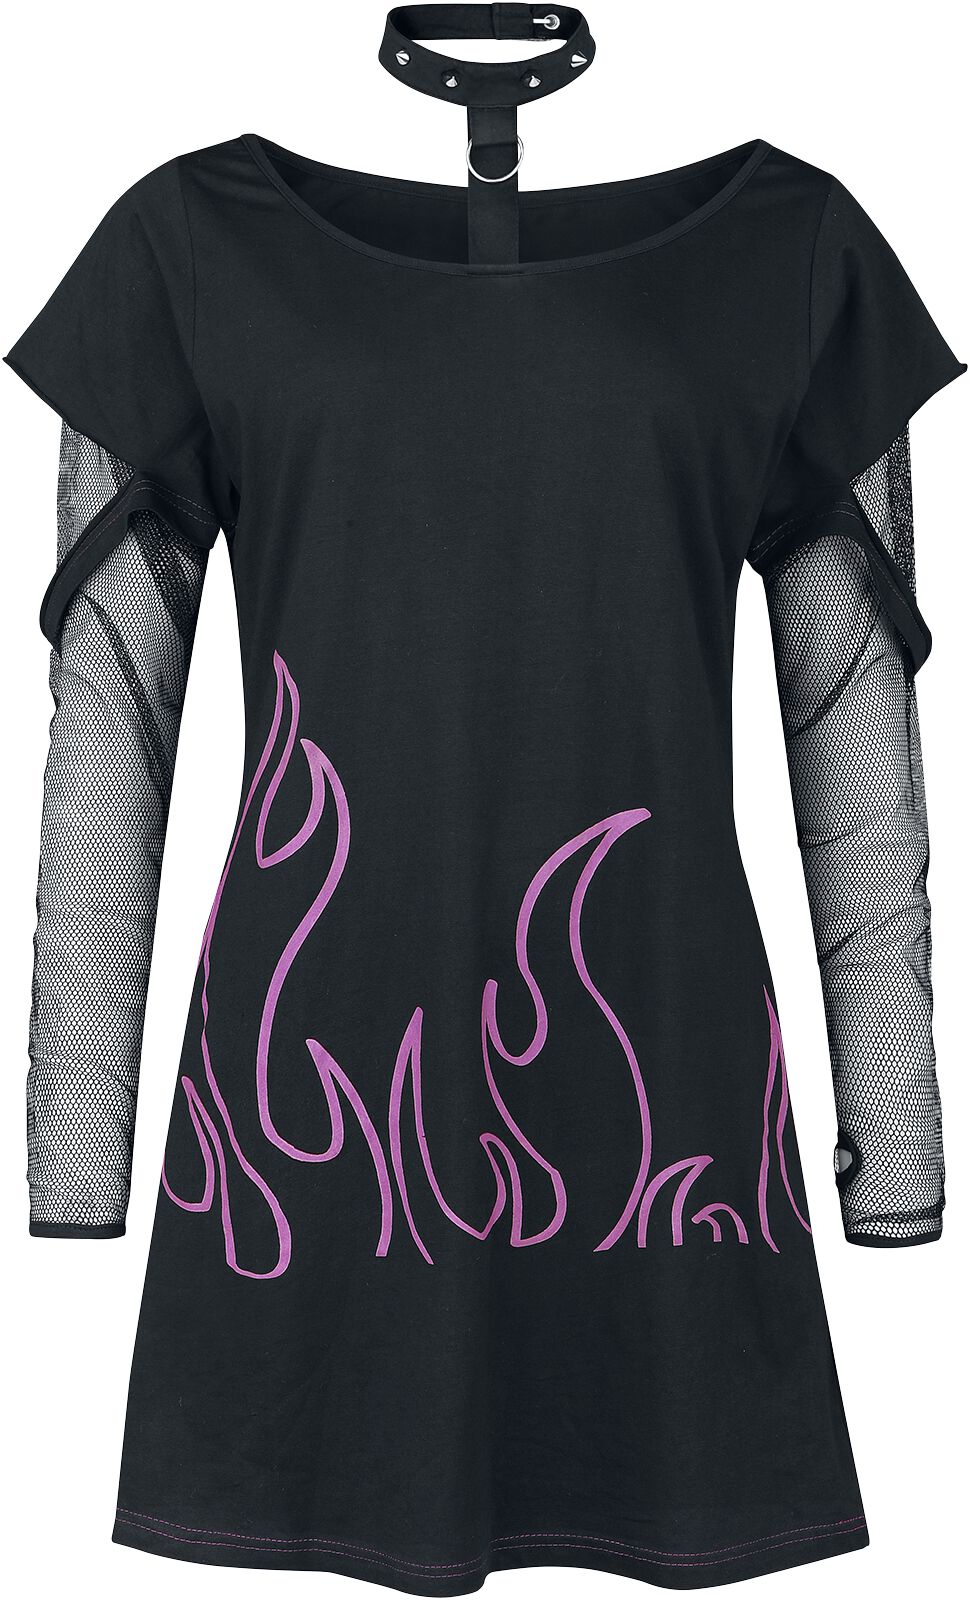 Heartless - Gothic Langarmshirt - Depths Of Hell Top - XS bis 4XL - für Damen - Größe 4XL - schwarz/pink